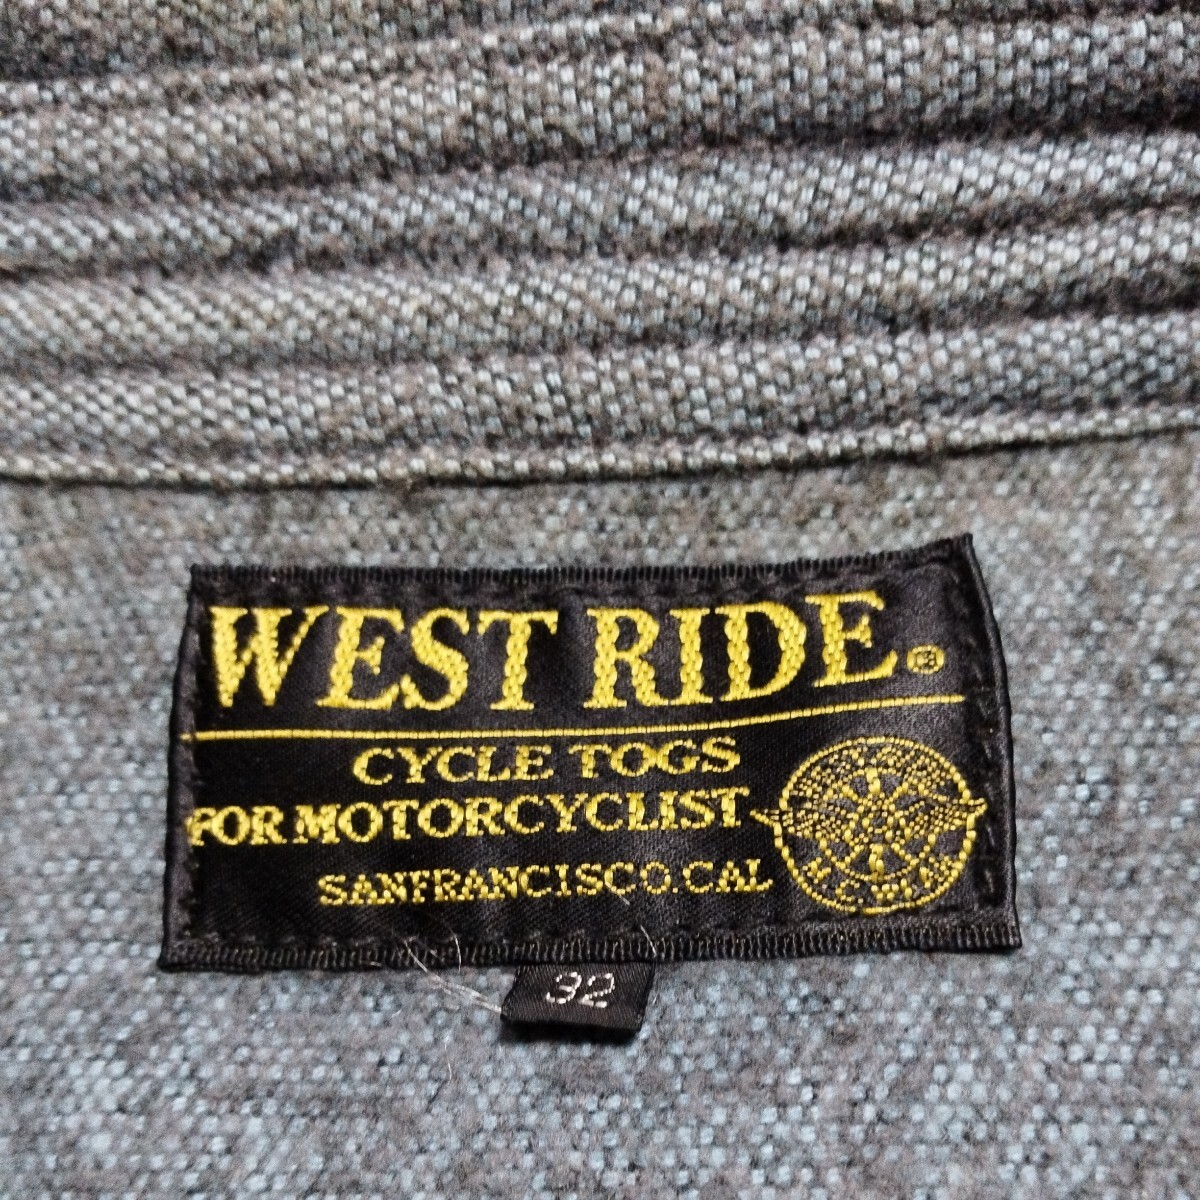  талия ride WESTRIDE рубашка в ковбойском стиле 32 б/у American Casual переиздание копия 